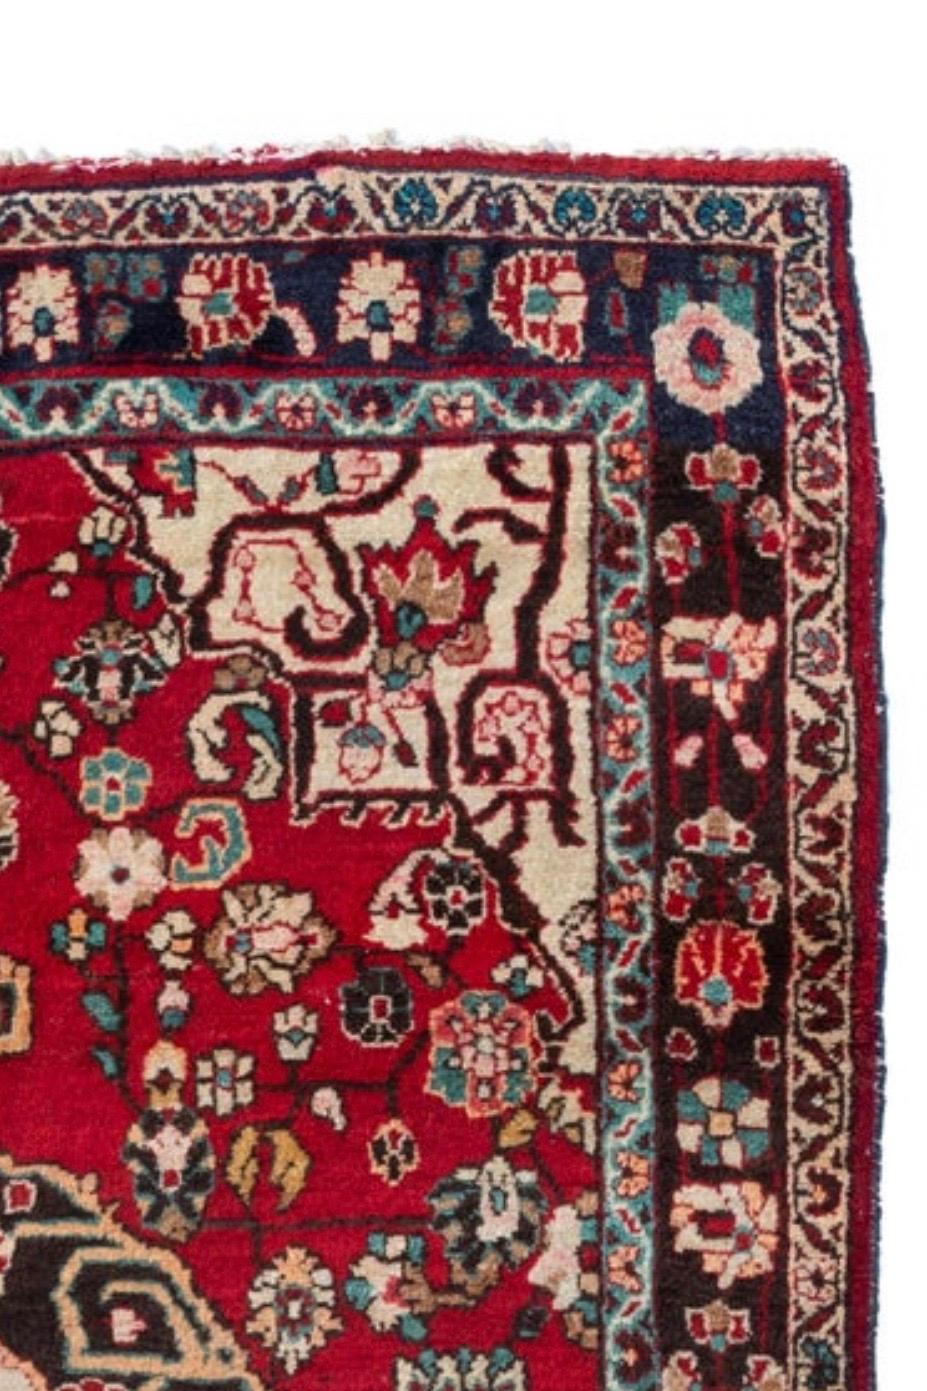 Sarouk ist ein kleines Dorf und seine Nachbardörfer im Nordwesten des Iran. Die meisten Sarouk-Teppiche haben ein sehr ausgeprägtes Design, das von Blumengirlanden und -bouquets abhängt. 

Dies ist ein schöner Vintage-Sarouk-Teppich aus den 1960er